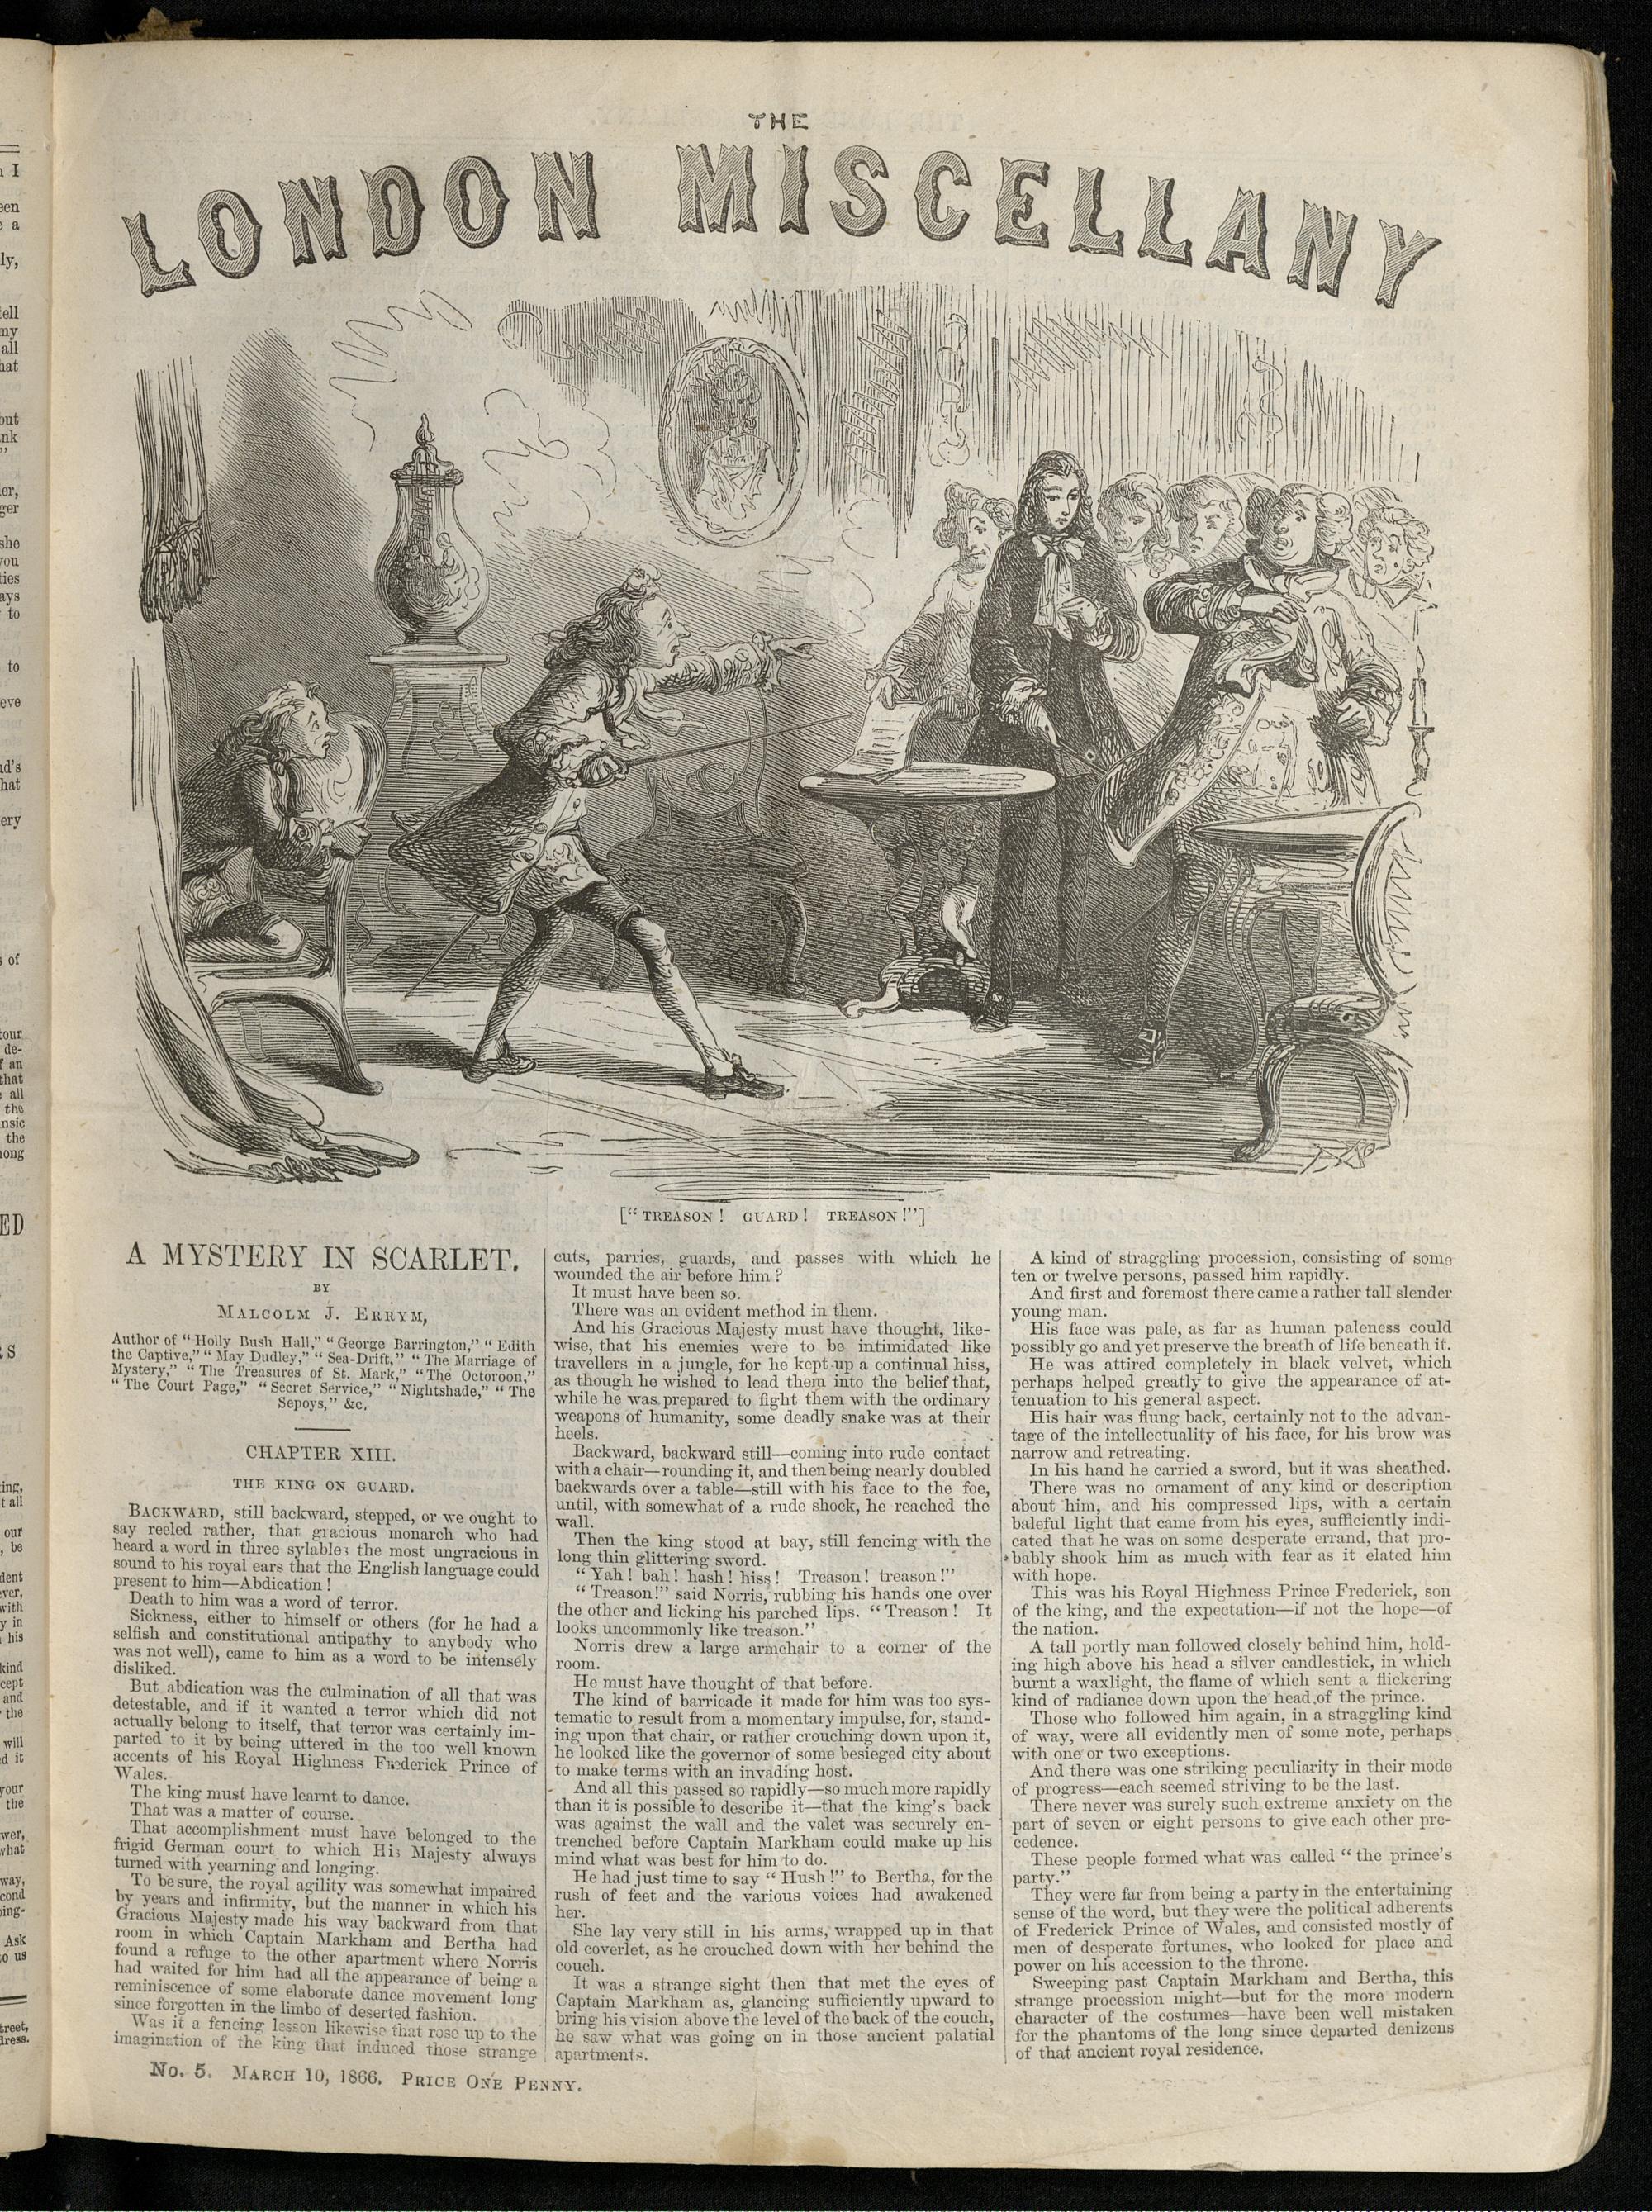 "'Treason! Guard! Treason!'" The London Miscellany 5 (10 March 1866), 65